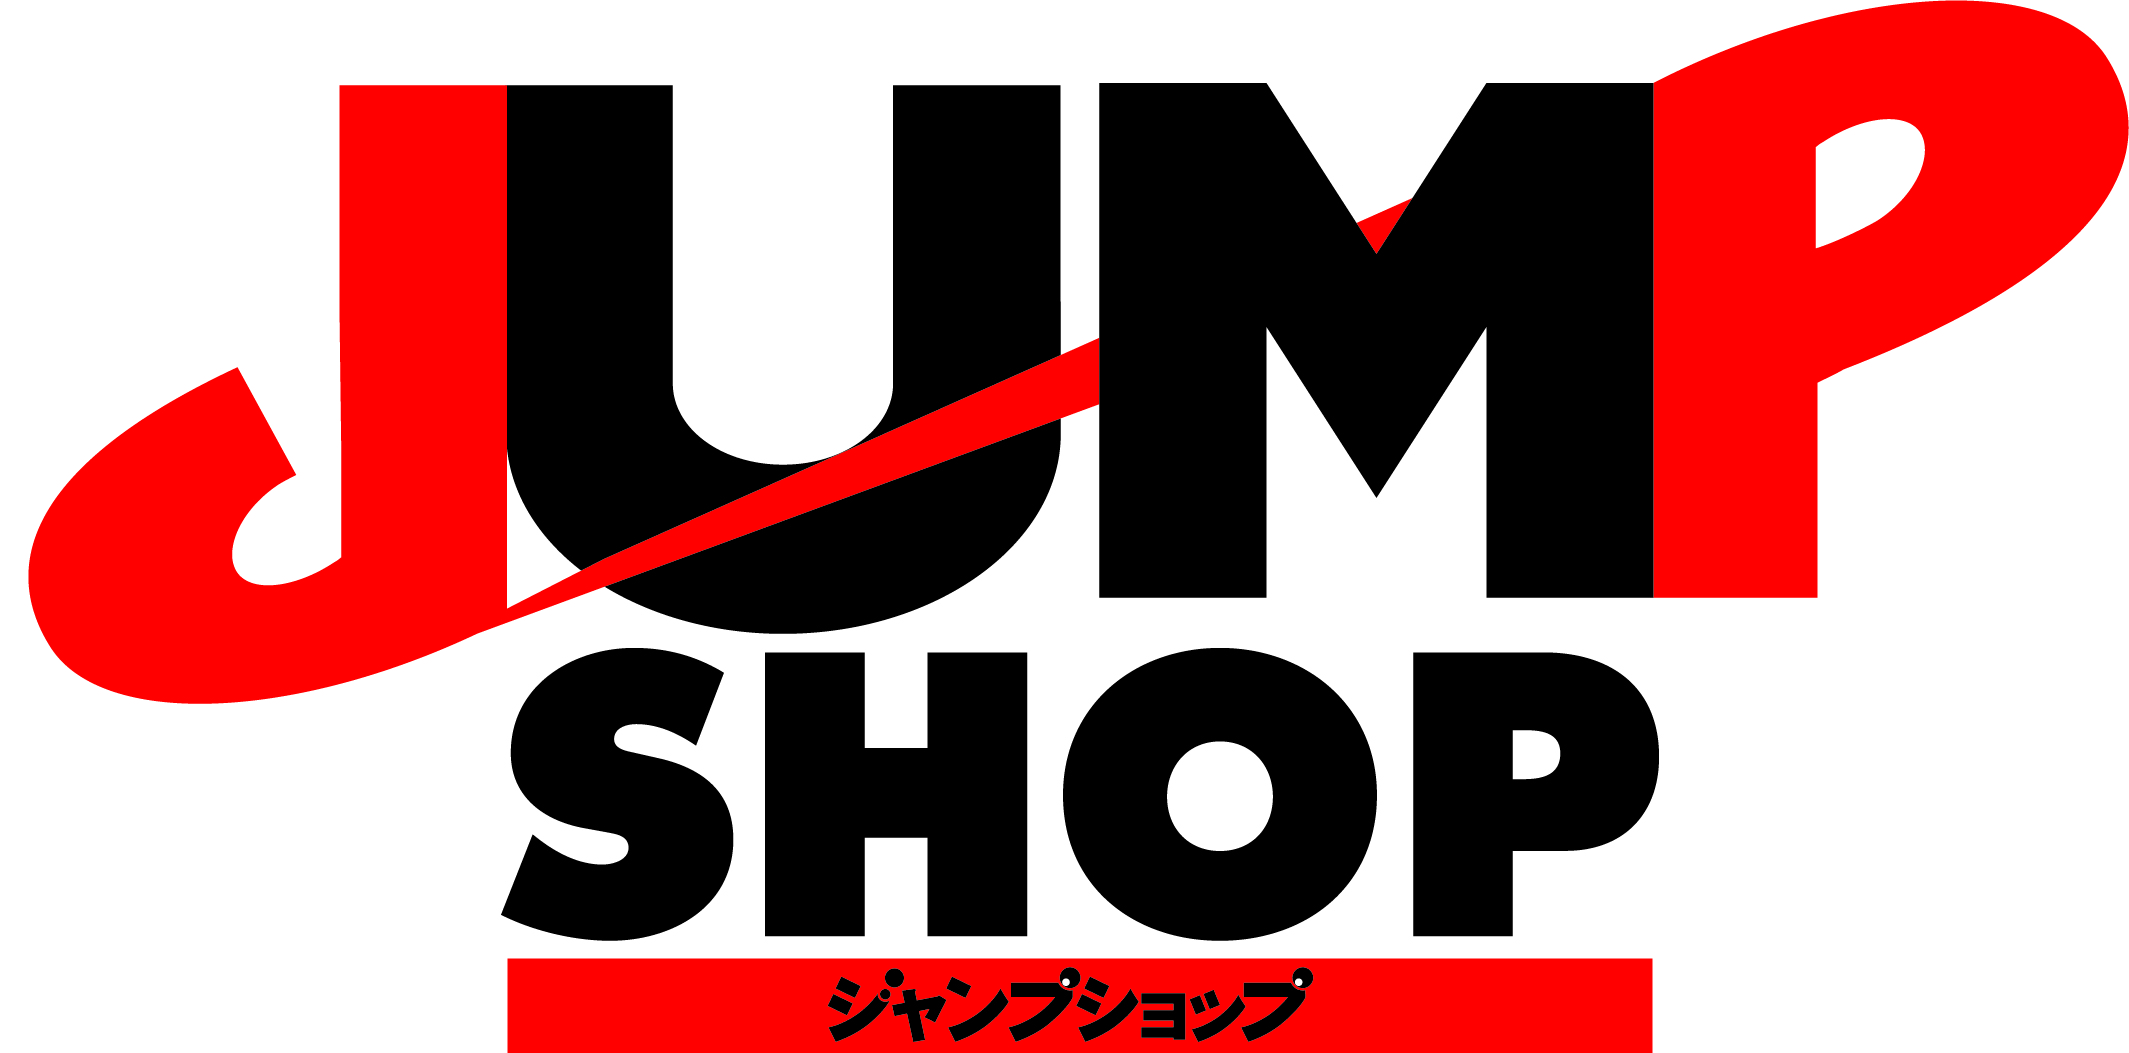 7月19日 日 期間限定 鬼滅の刃 グッズショップin Jump Shop東京 アクアシティお台場店のチケット情報 予約 購入 販売 ライヴポケット